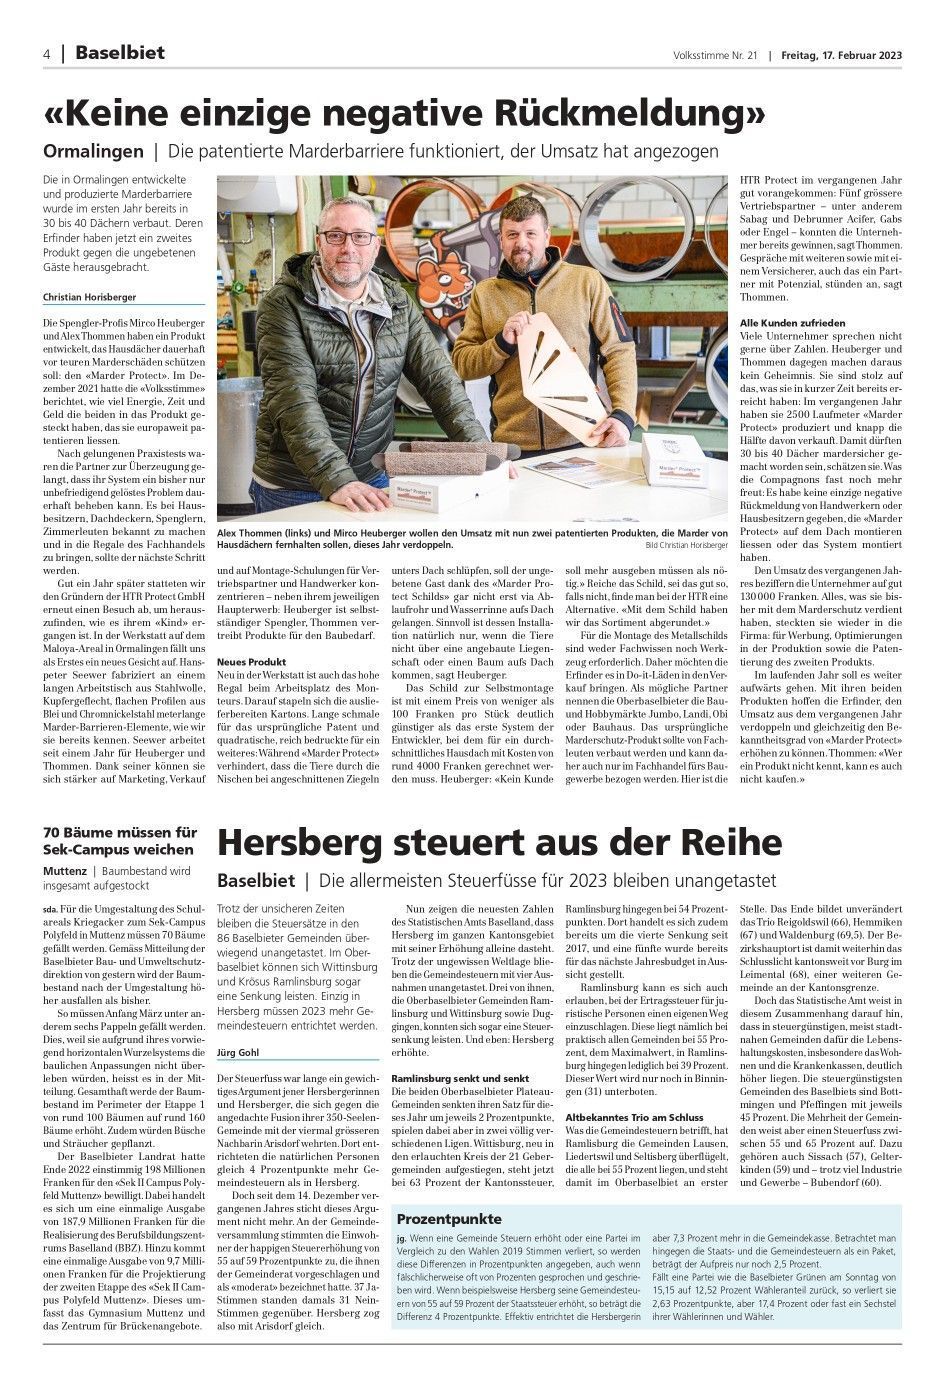 Marderschutz von der HTR PROTECT GmbH in einer Zeitung